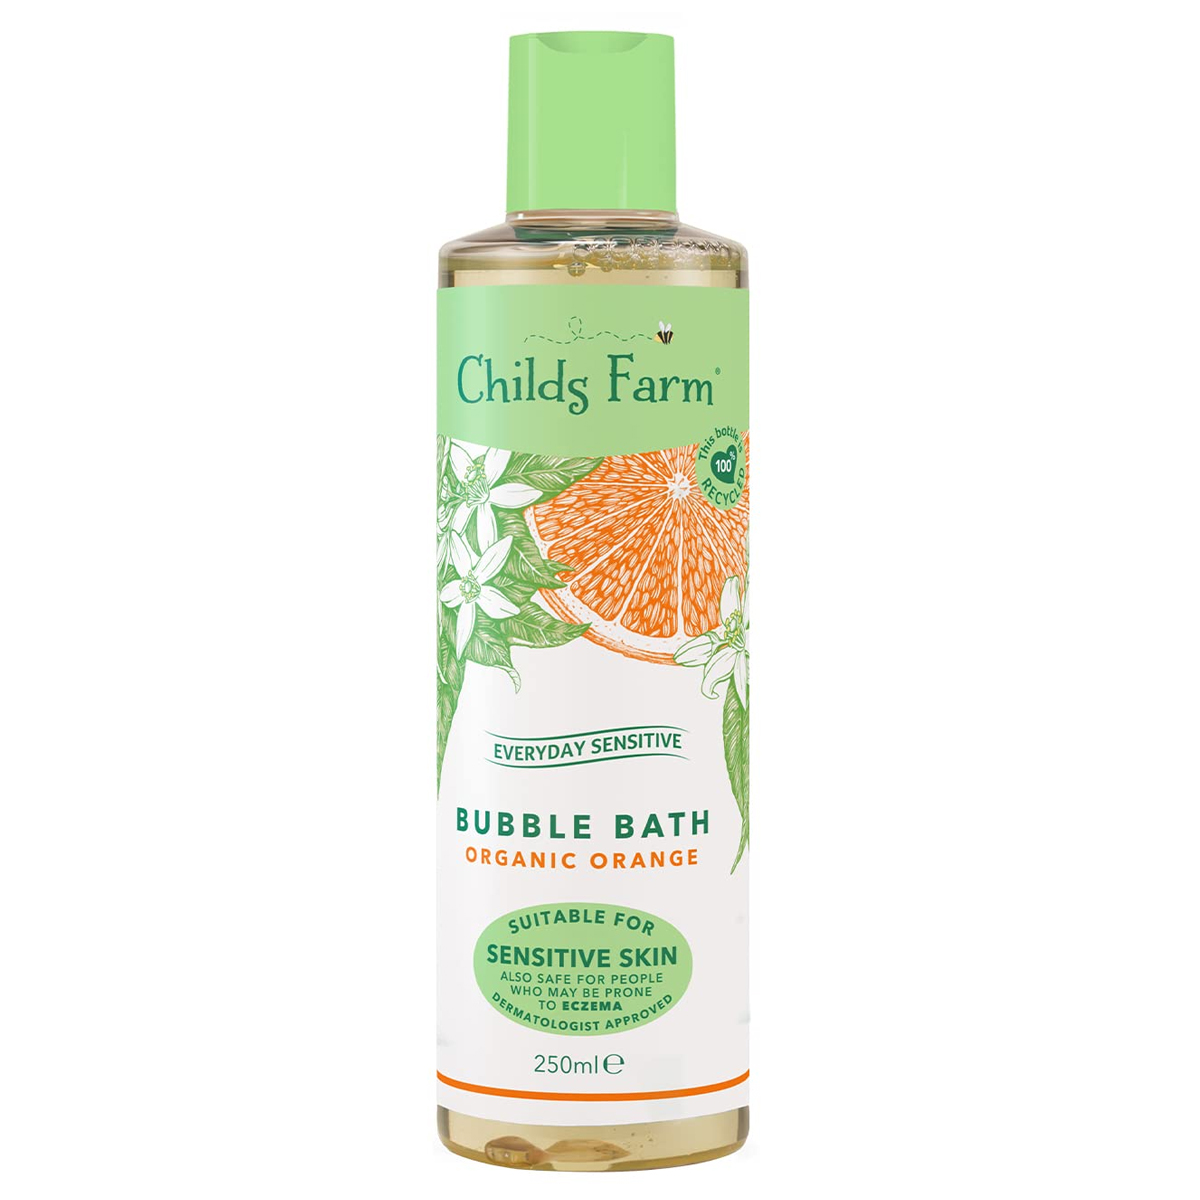 شوینده حبابی پرتقال ارگانیک~Bubble Bath Organic Orange~CHILDS FARM